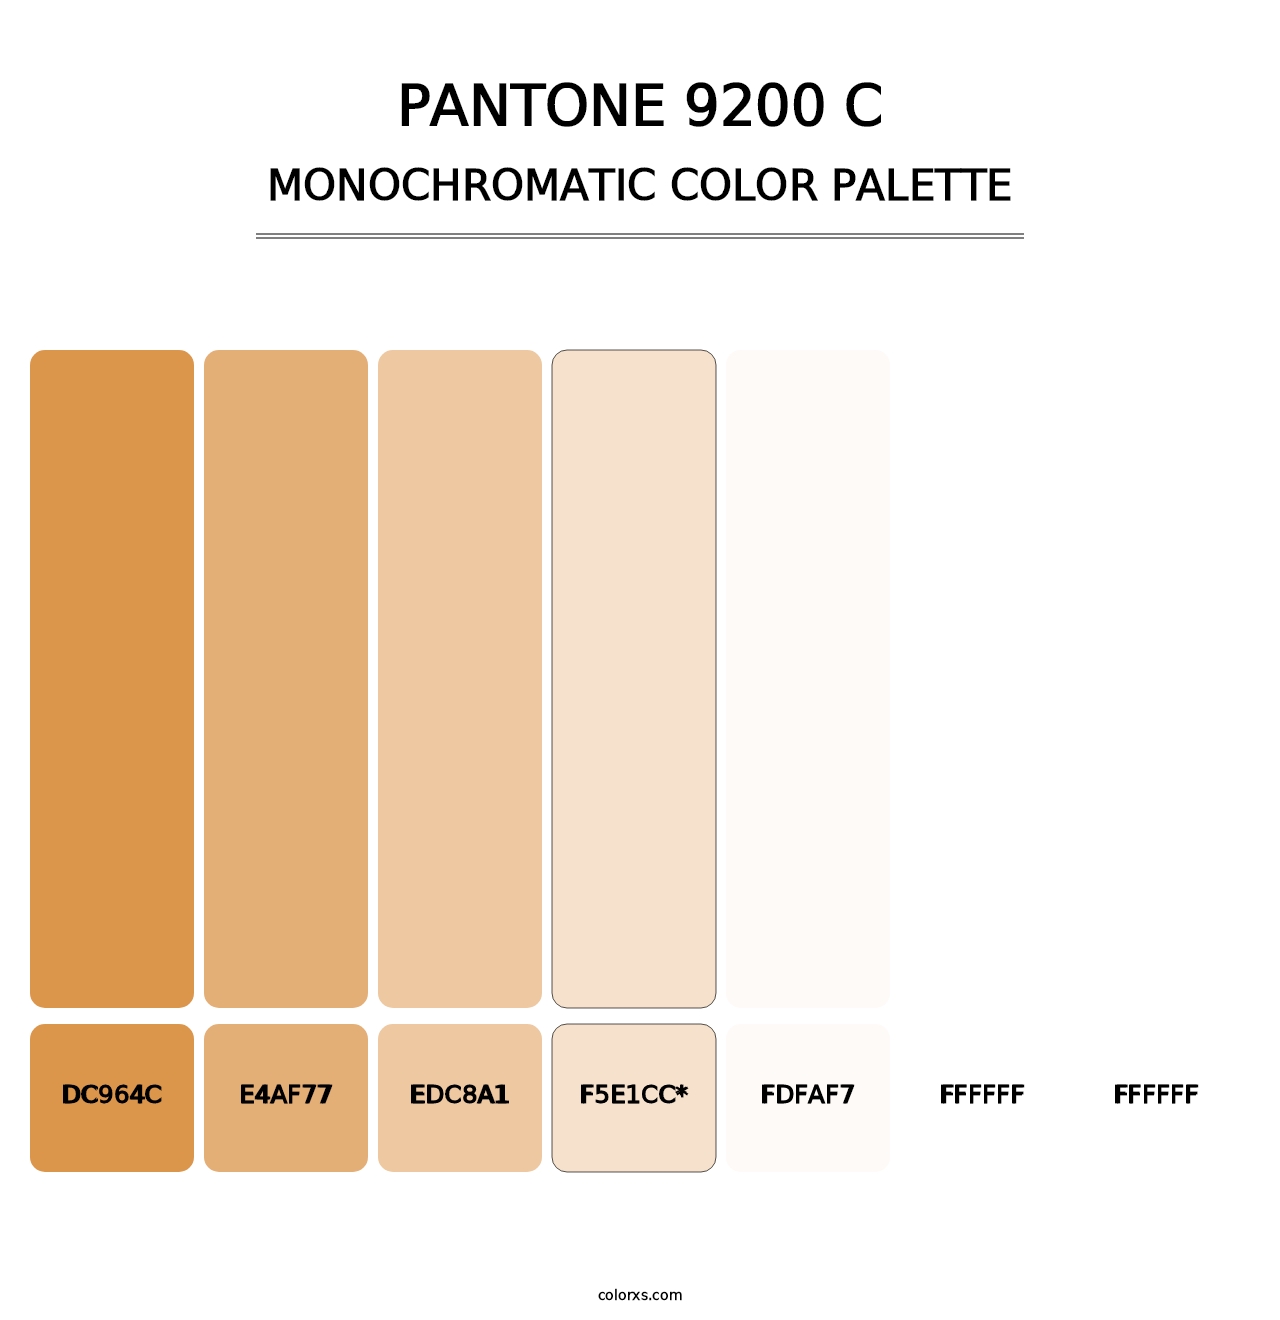 PANTONE 9200 C - Monochromatic Color Palette